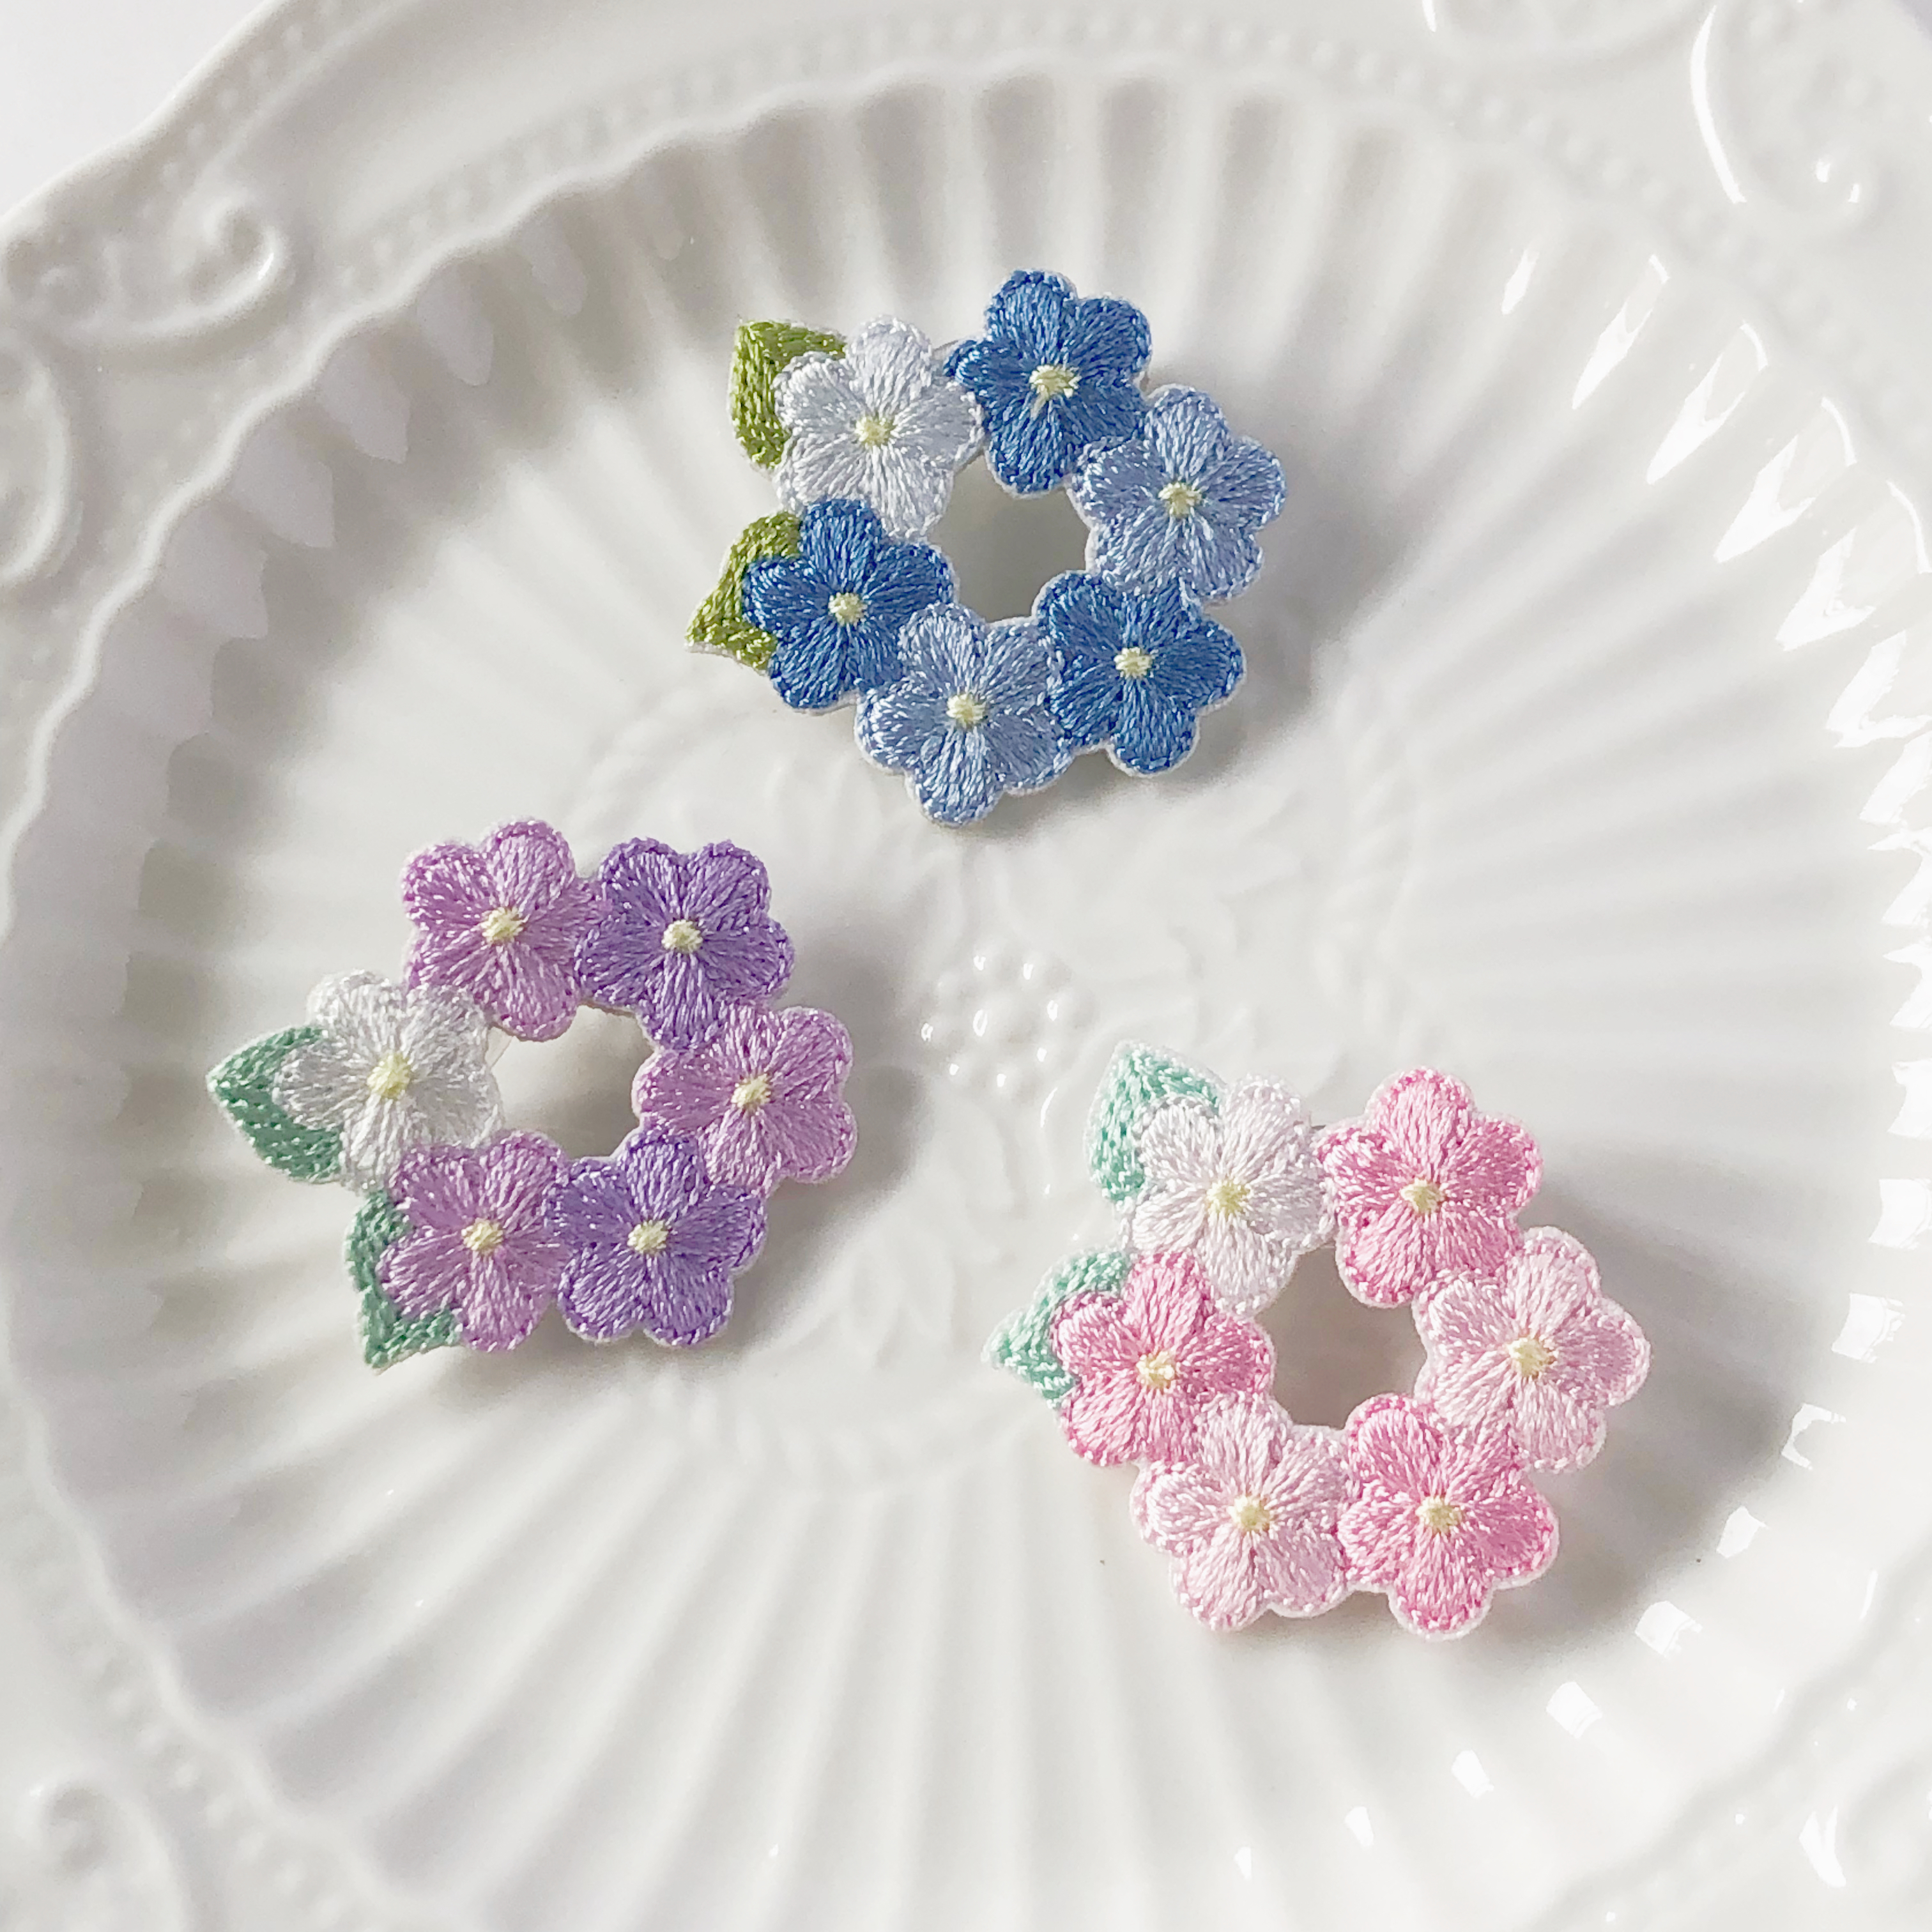 可愛い刺繍の紫陽花のブローチ 1パープル 2ブルー 3ピンク あじさい アジサイ 雨 梅雨 Iichi ハンドメイド クラフト作品 手仕事品の通販